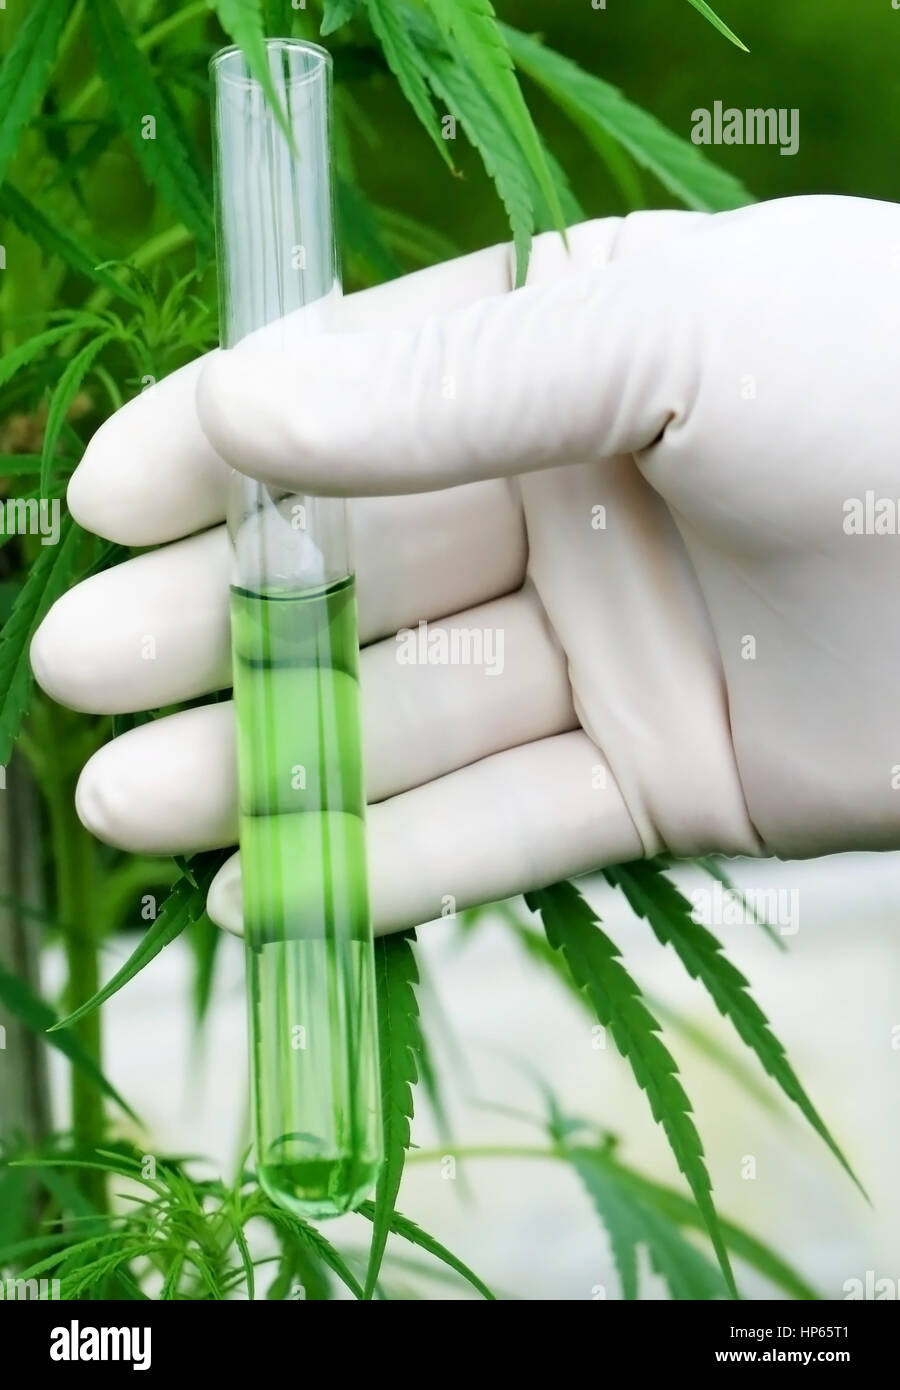 Estratto di cannabis in provetta holding dallo scienziato Foto Stock